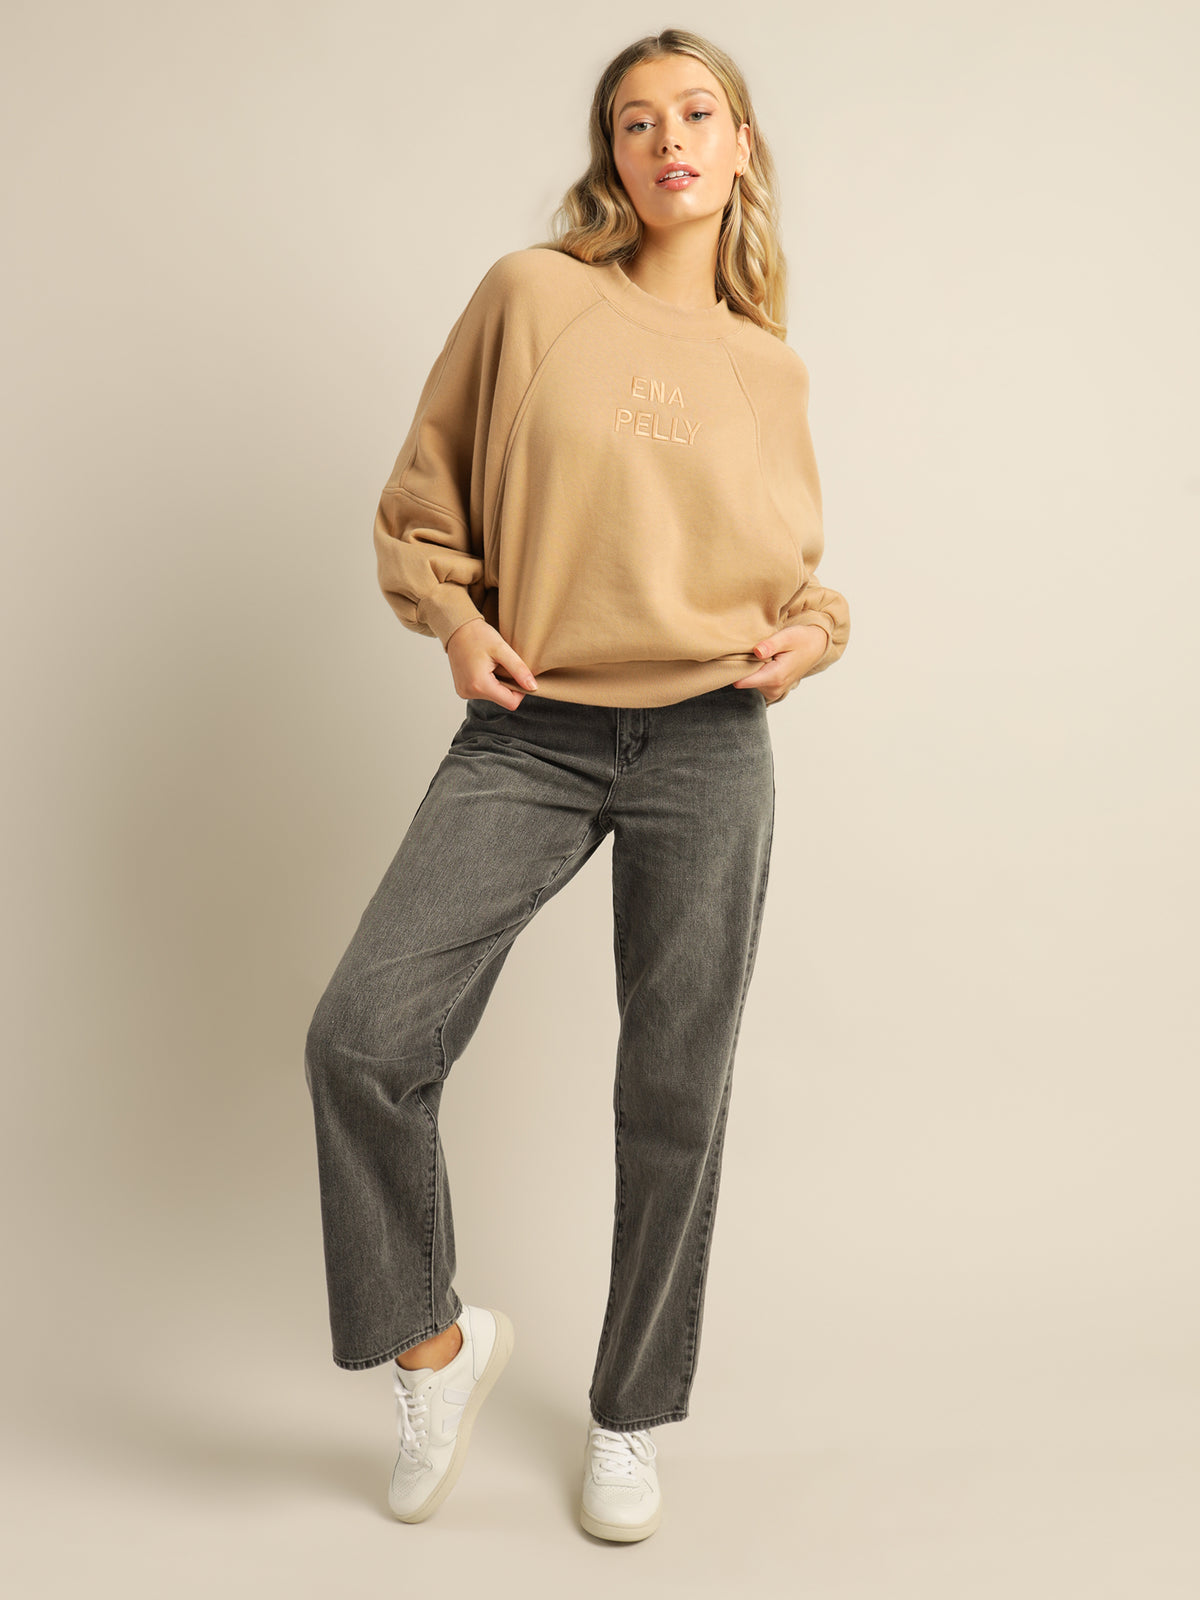 Sienna Sweater in Almond Tan